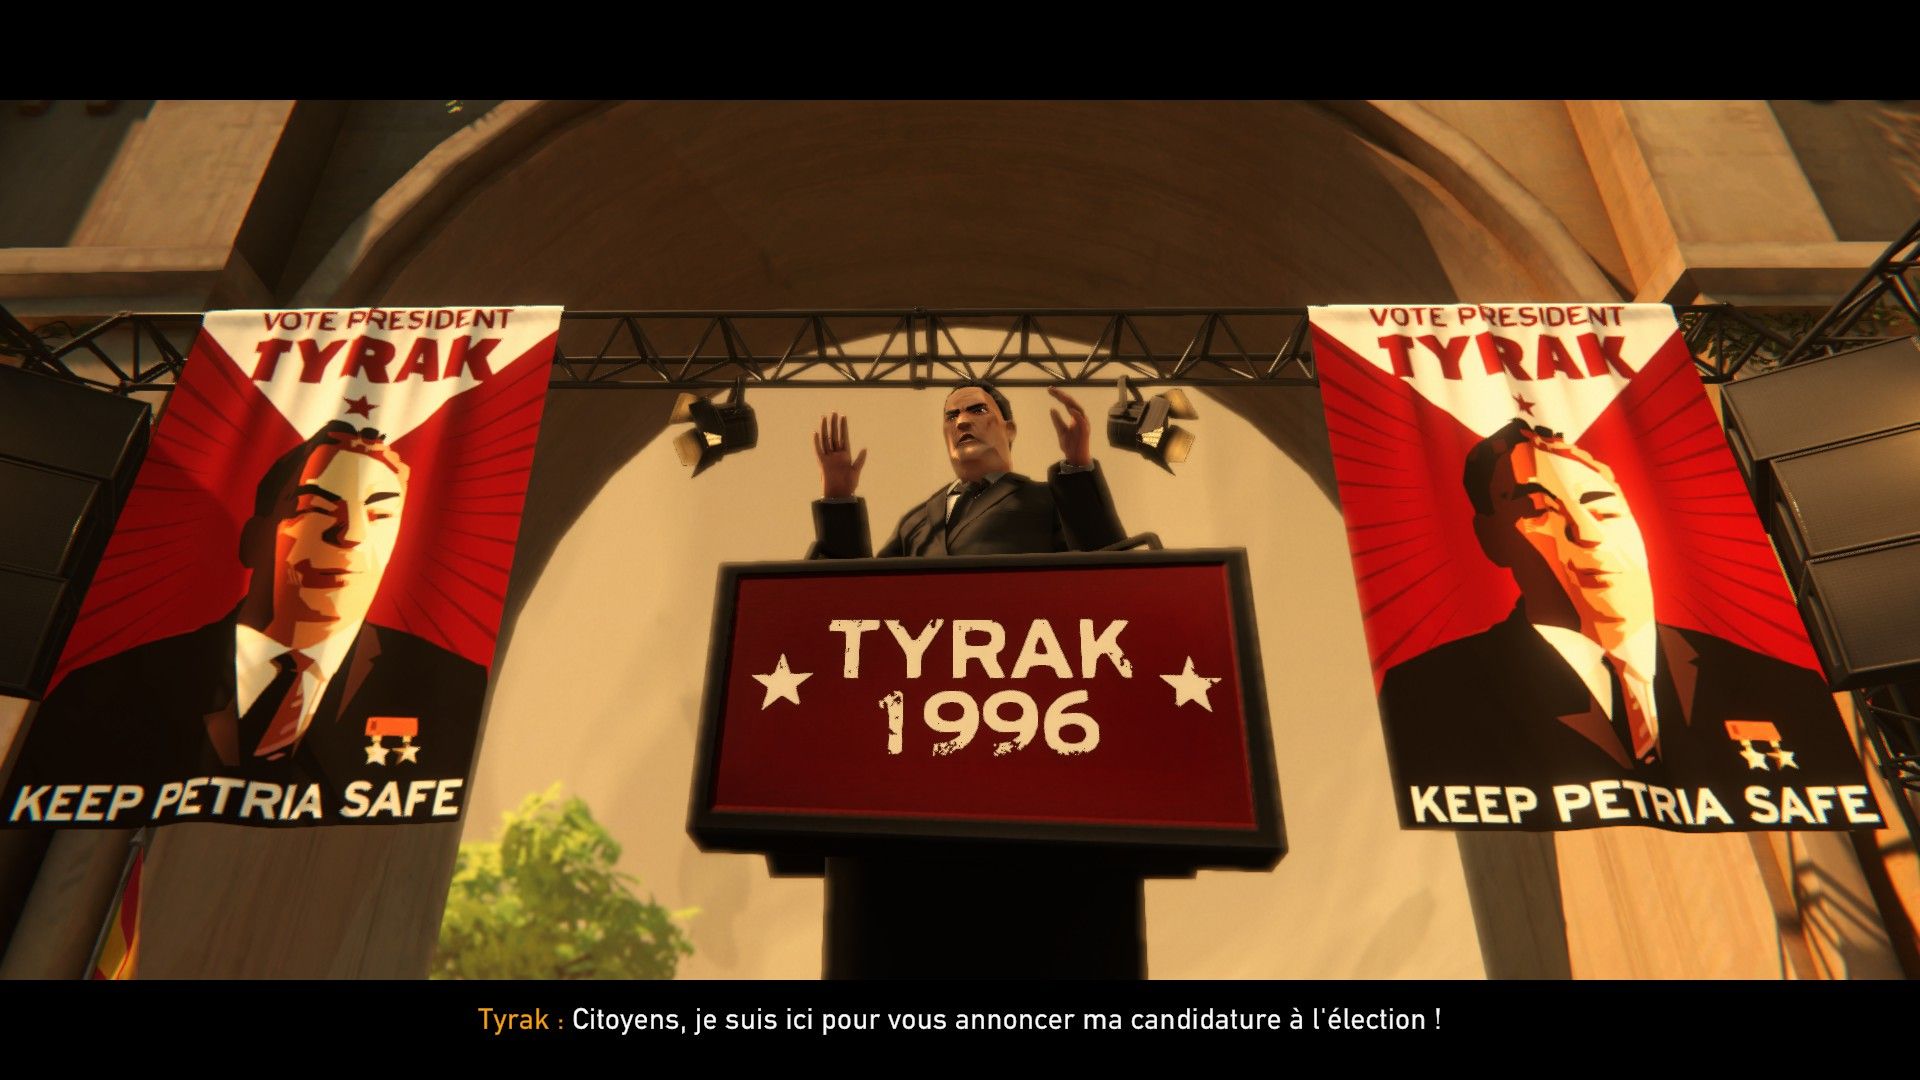 Notre bon président Tyrak annonce sa candidature à l'élection, entre deux belles affiches qui promettent de keep Petria safe. M'est avis que ce gars n'est pas tout à fait net.